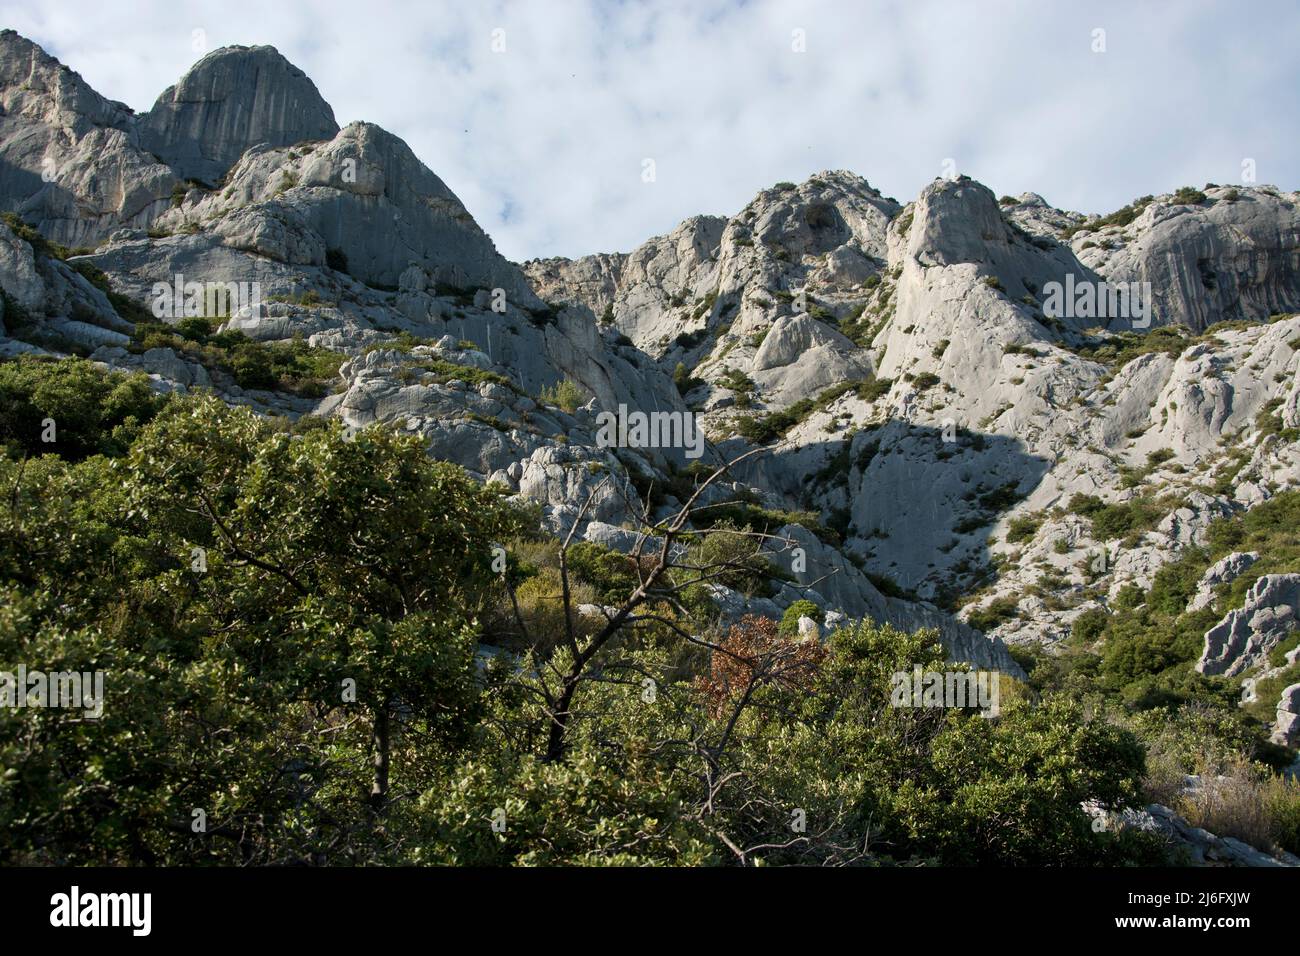 Die spektakuläre Montagne Sainte-Victoire, Kalksteingebirge im Süden Frankreichs in der Nähe von Aix-en-Provence Stock Photo